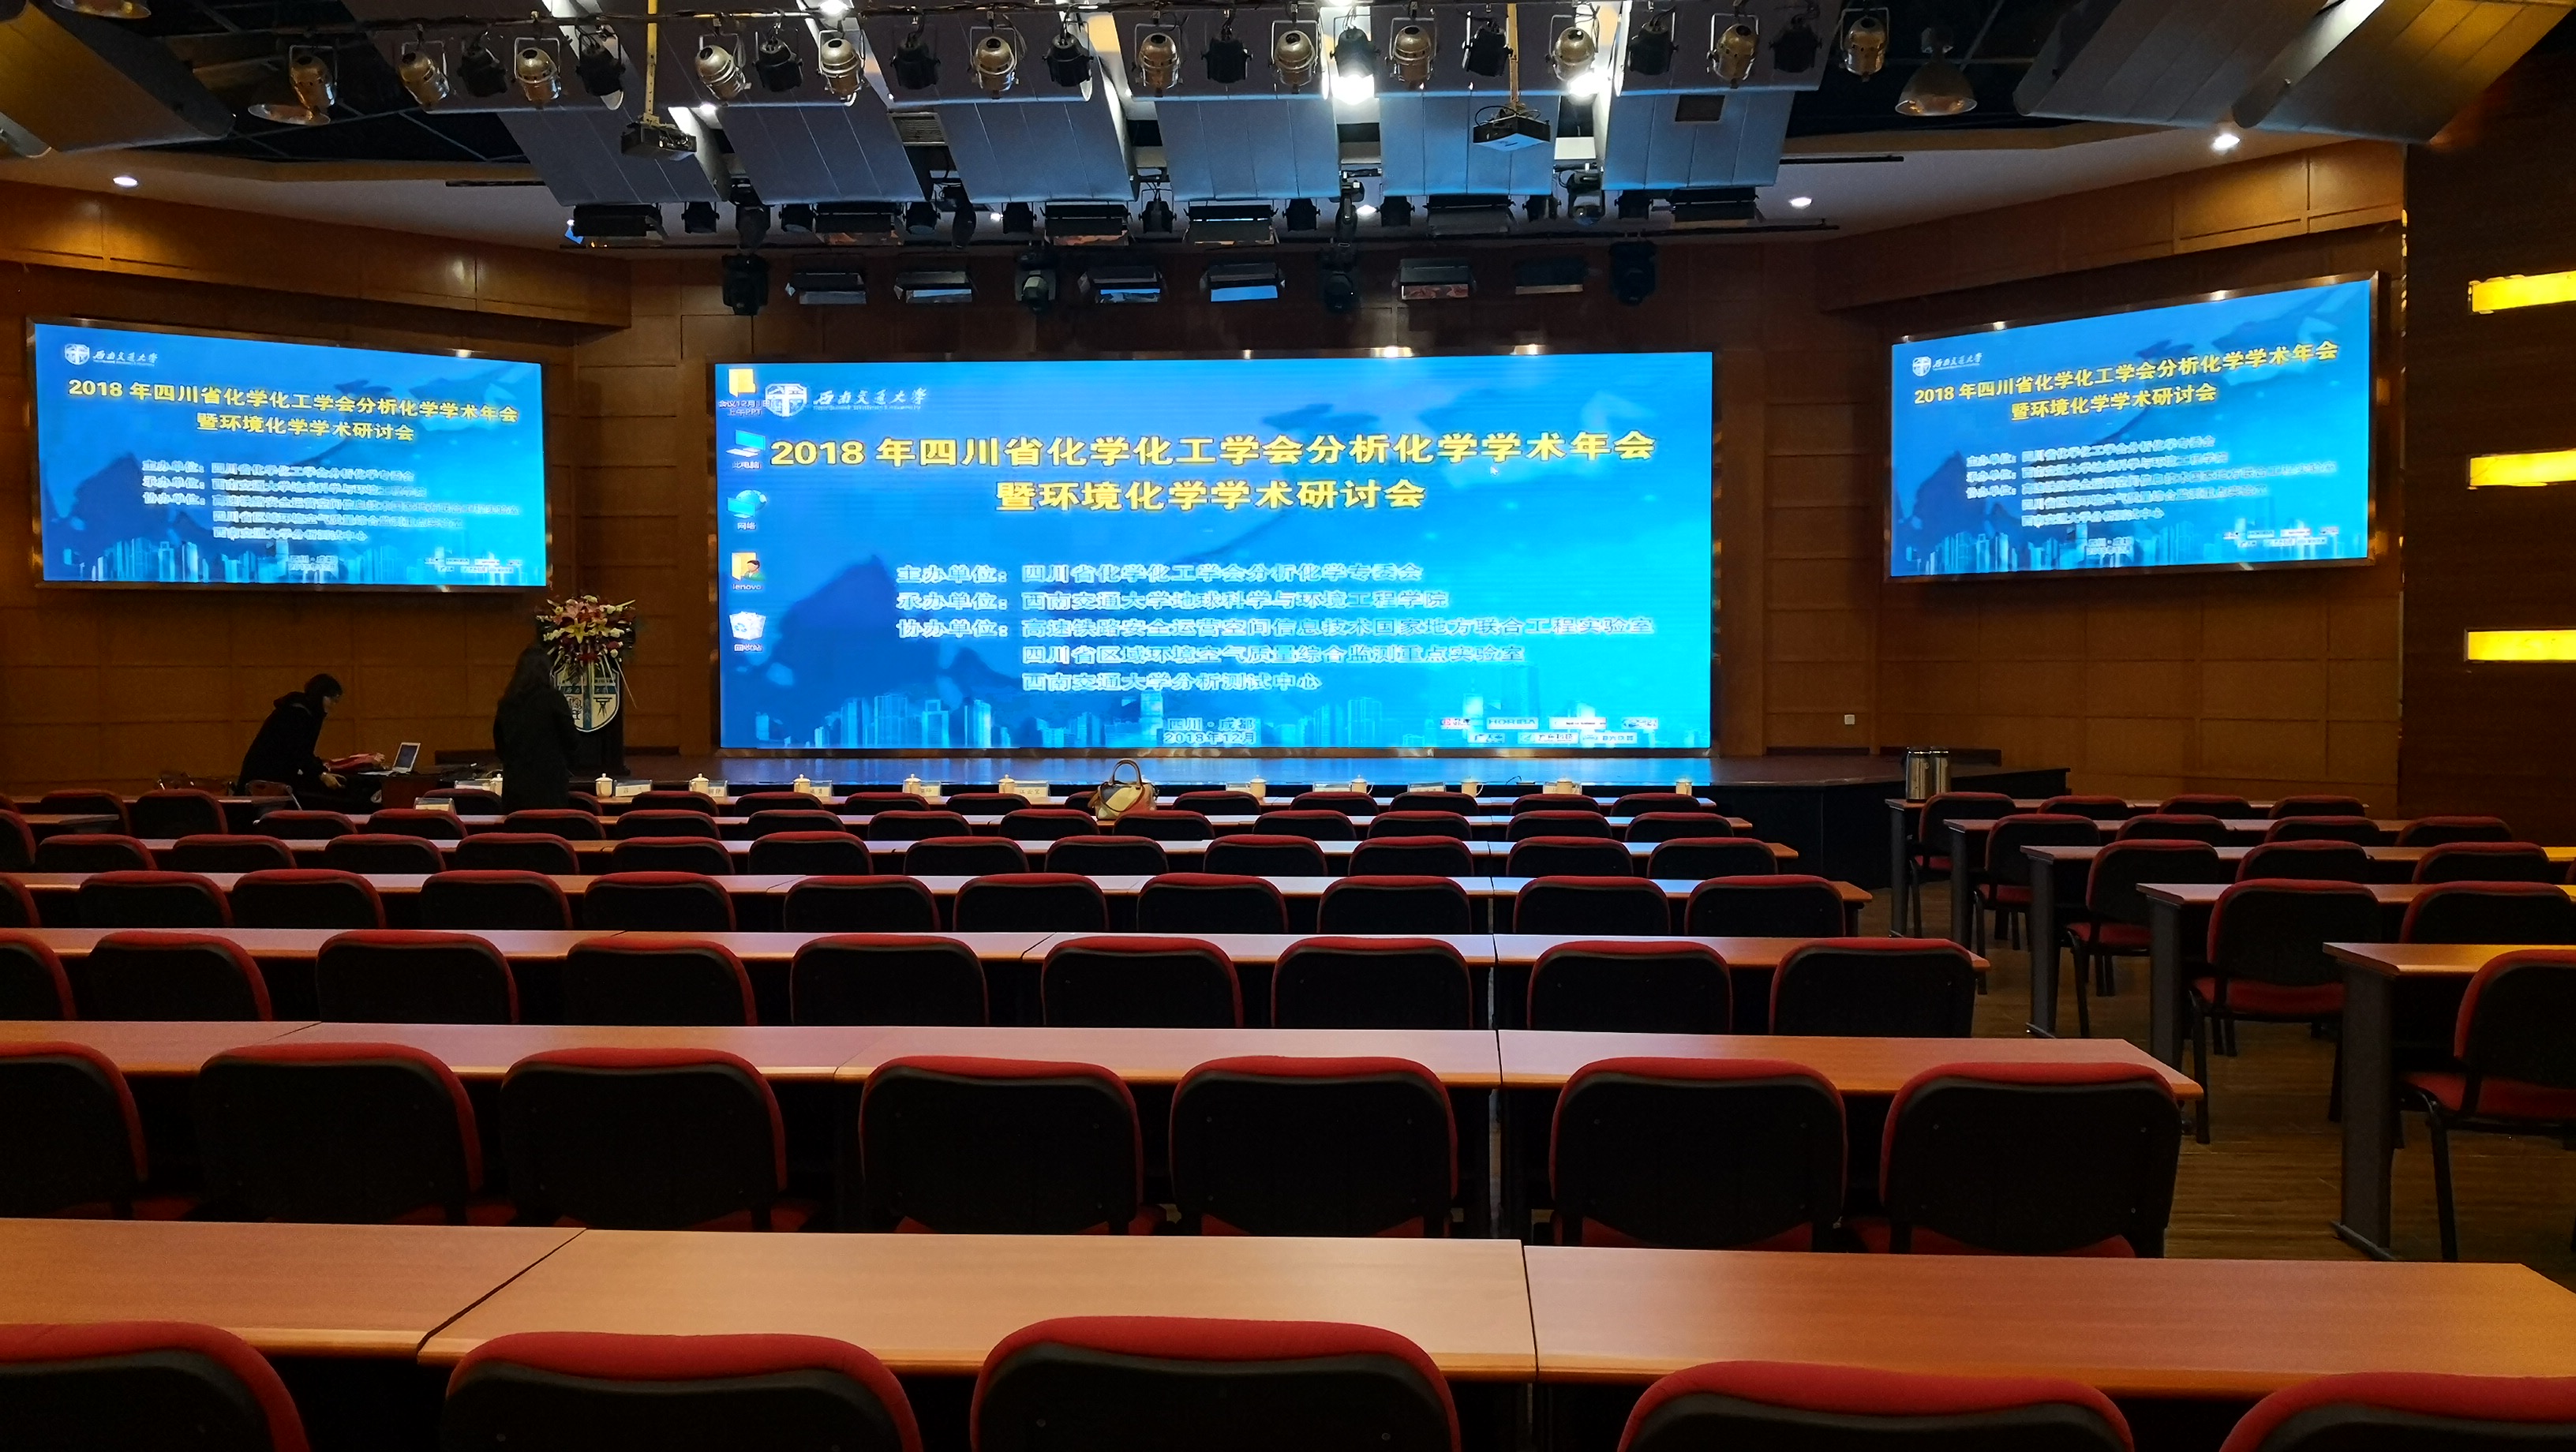 方舟科技赞助参加2018年四川省化学化工学会分析化学学术年会暨环境化学学术研讨会